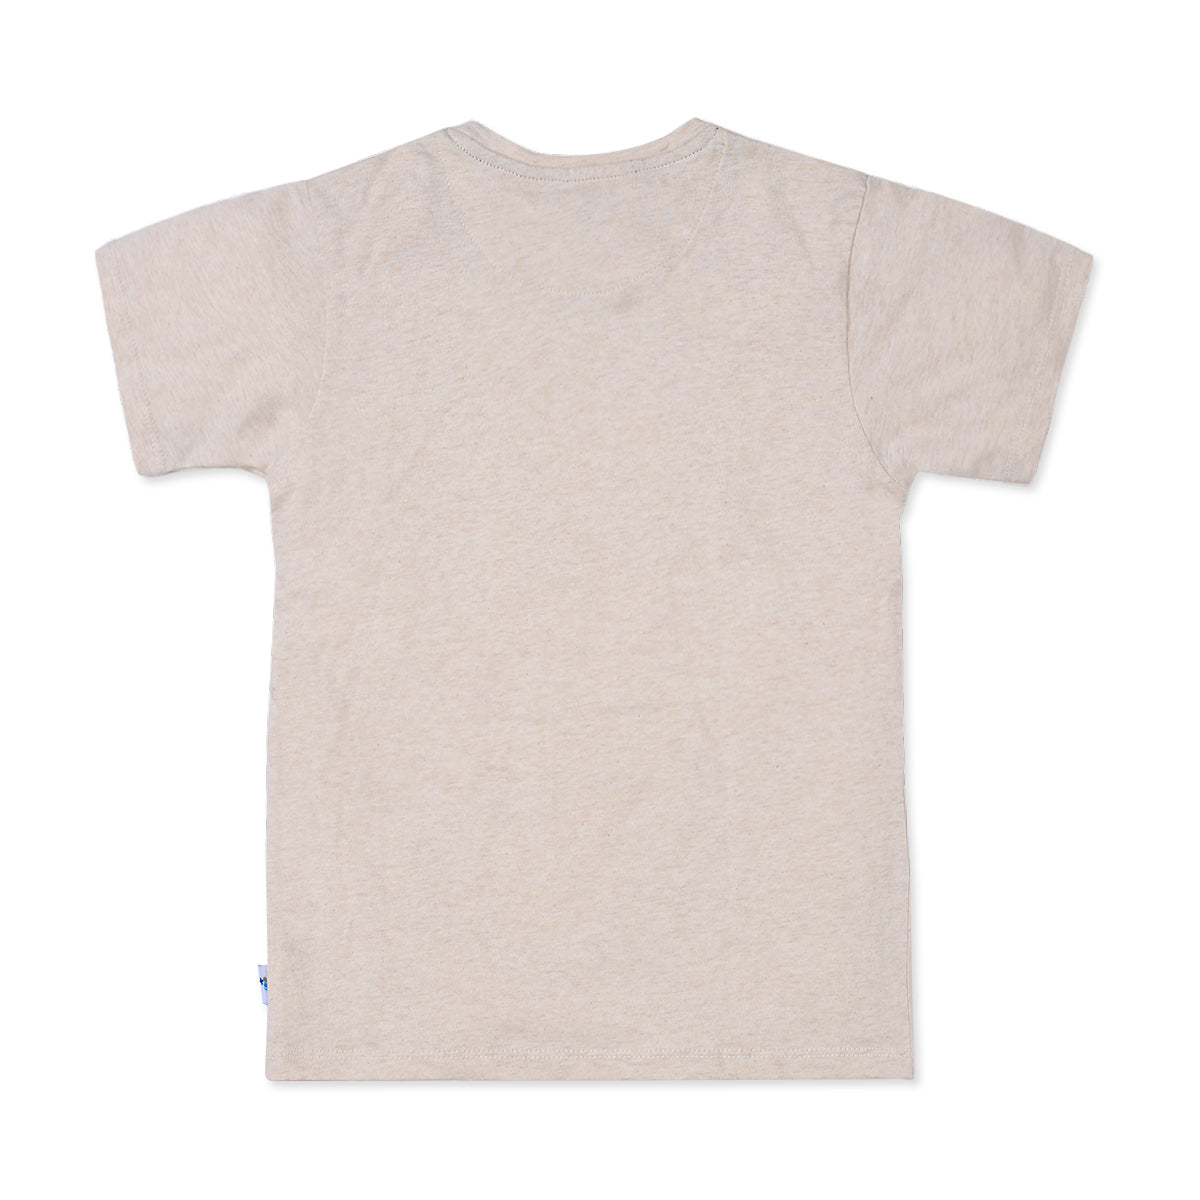 Poo Naps Oatmail Cotton T-Shirt